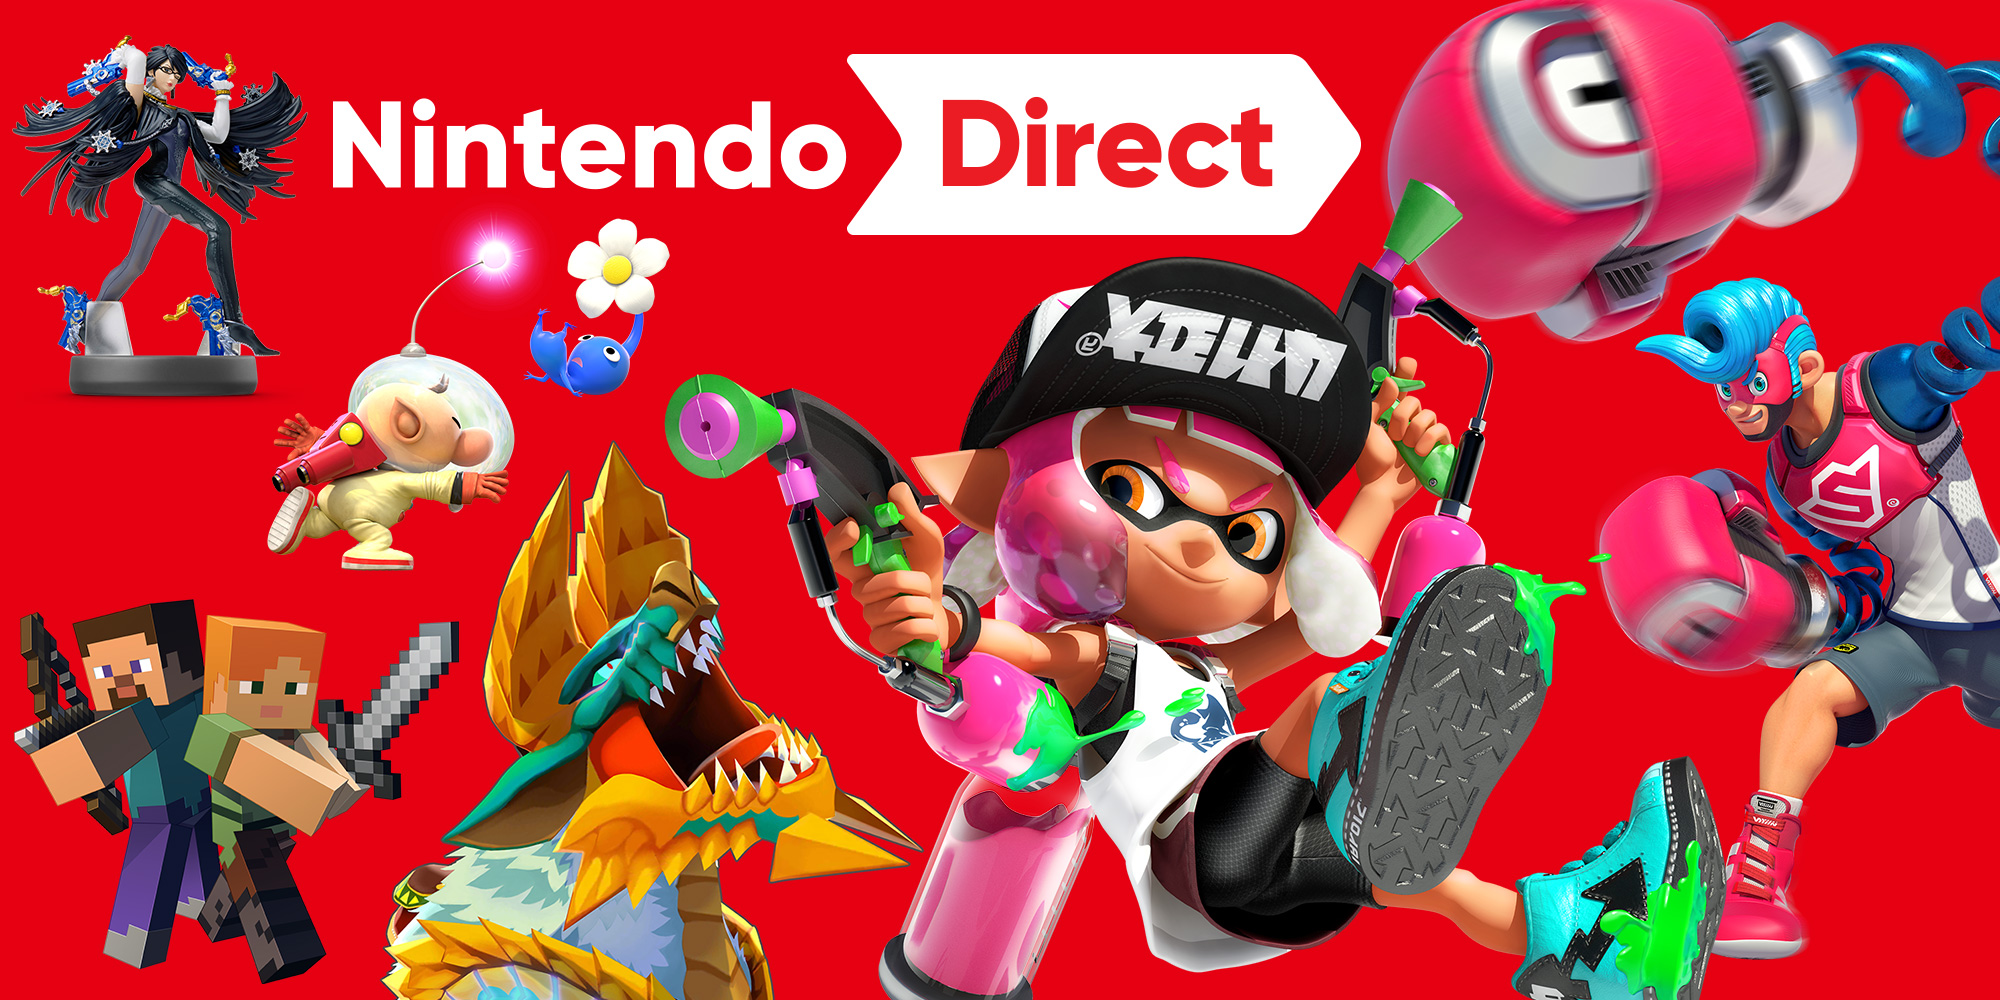 ARMS et Splatoon 2 sont à l'honneur dans la nouvelle présentation Nintendo Direct